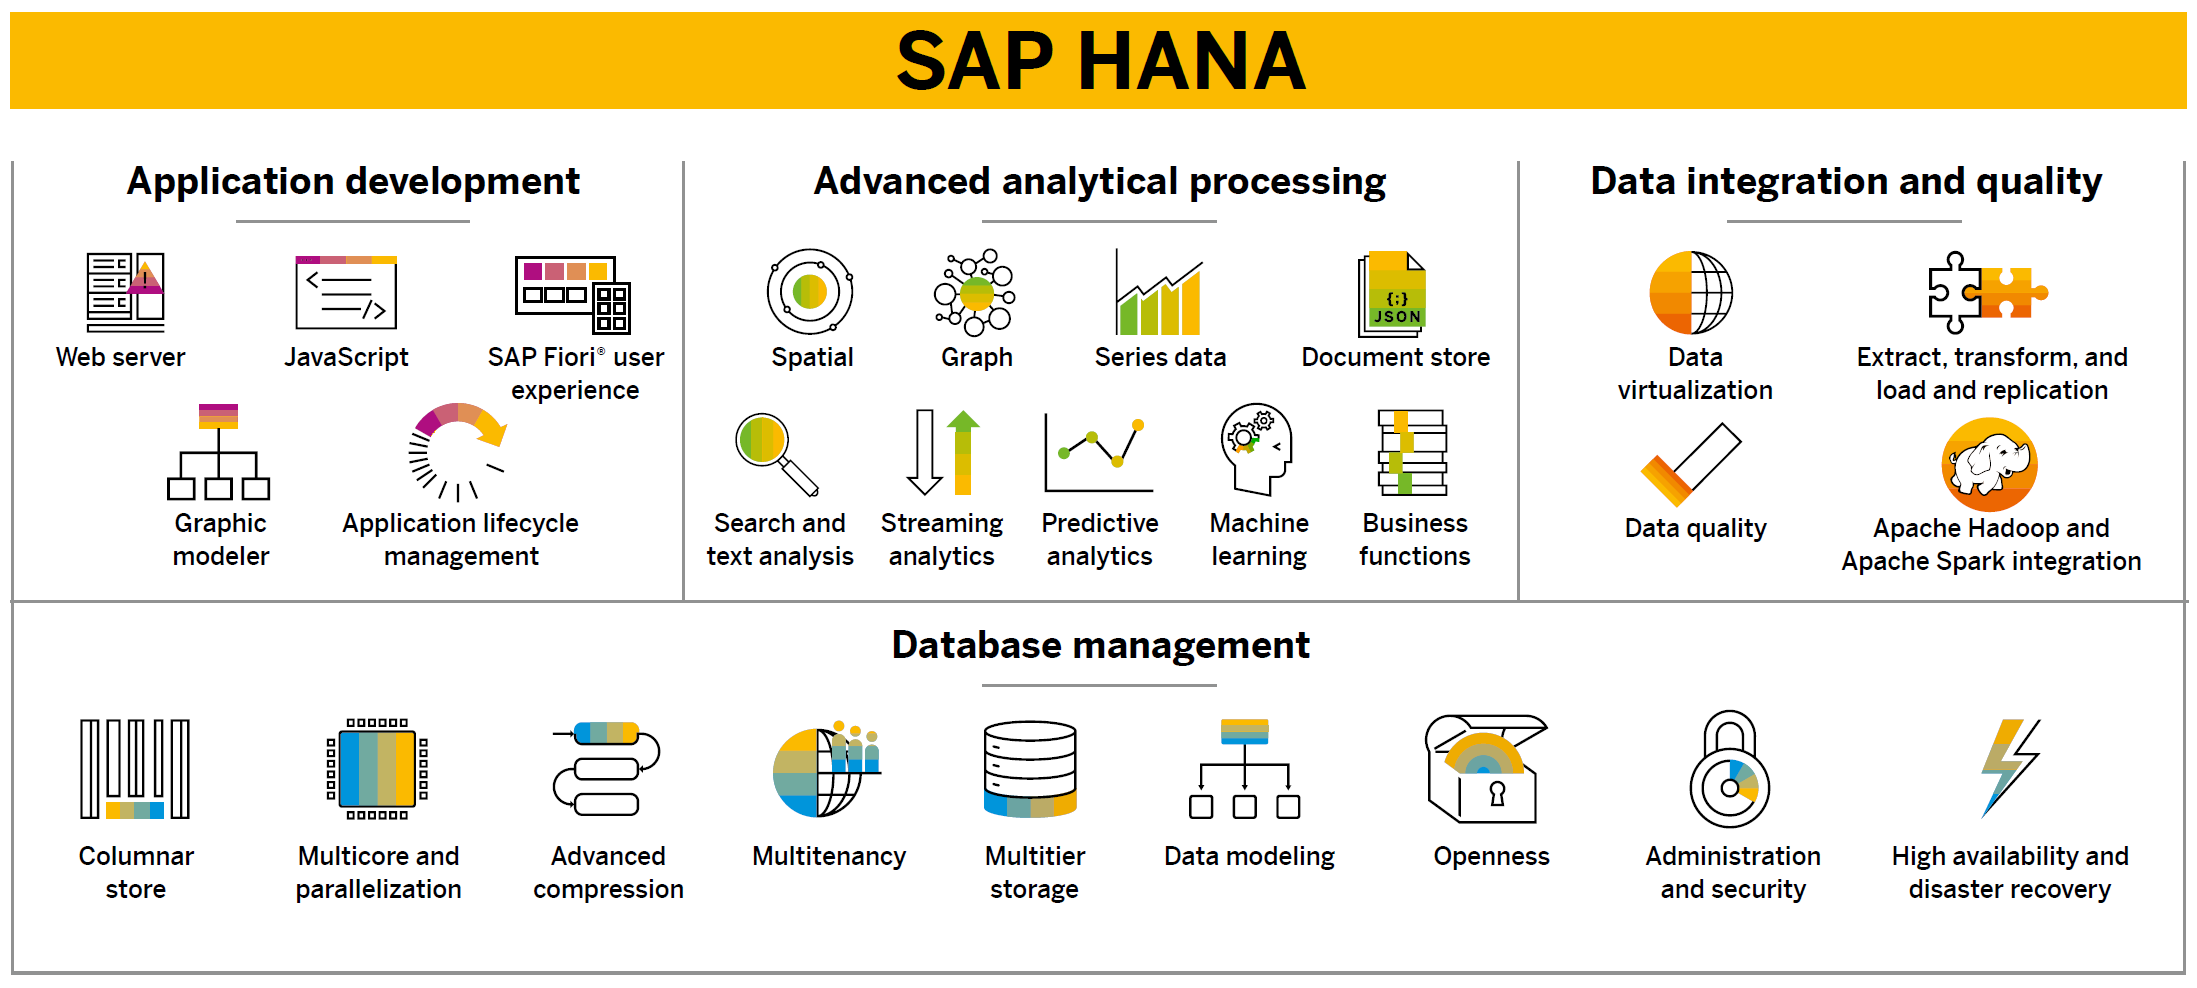 Diagramma informativo colorato che presenta le funzionalità chiave di SAP HANA, suddivise in sviluppo di applicazioni, elaborazione analitica avanzata, integrazione e qualità dei dati, e gestione del database.